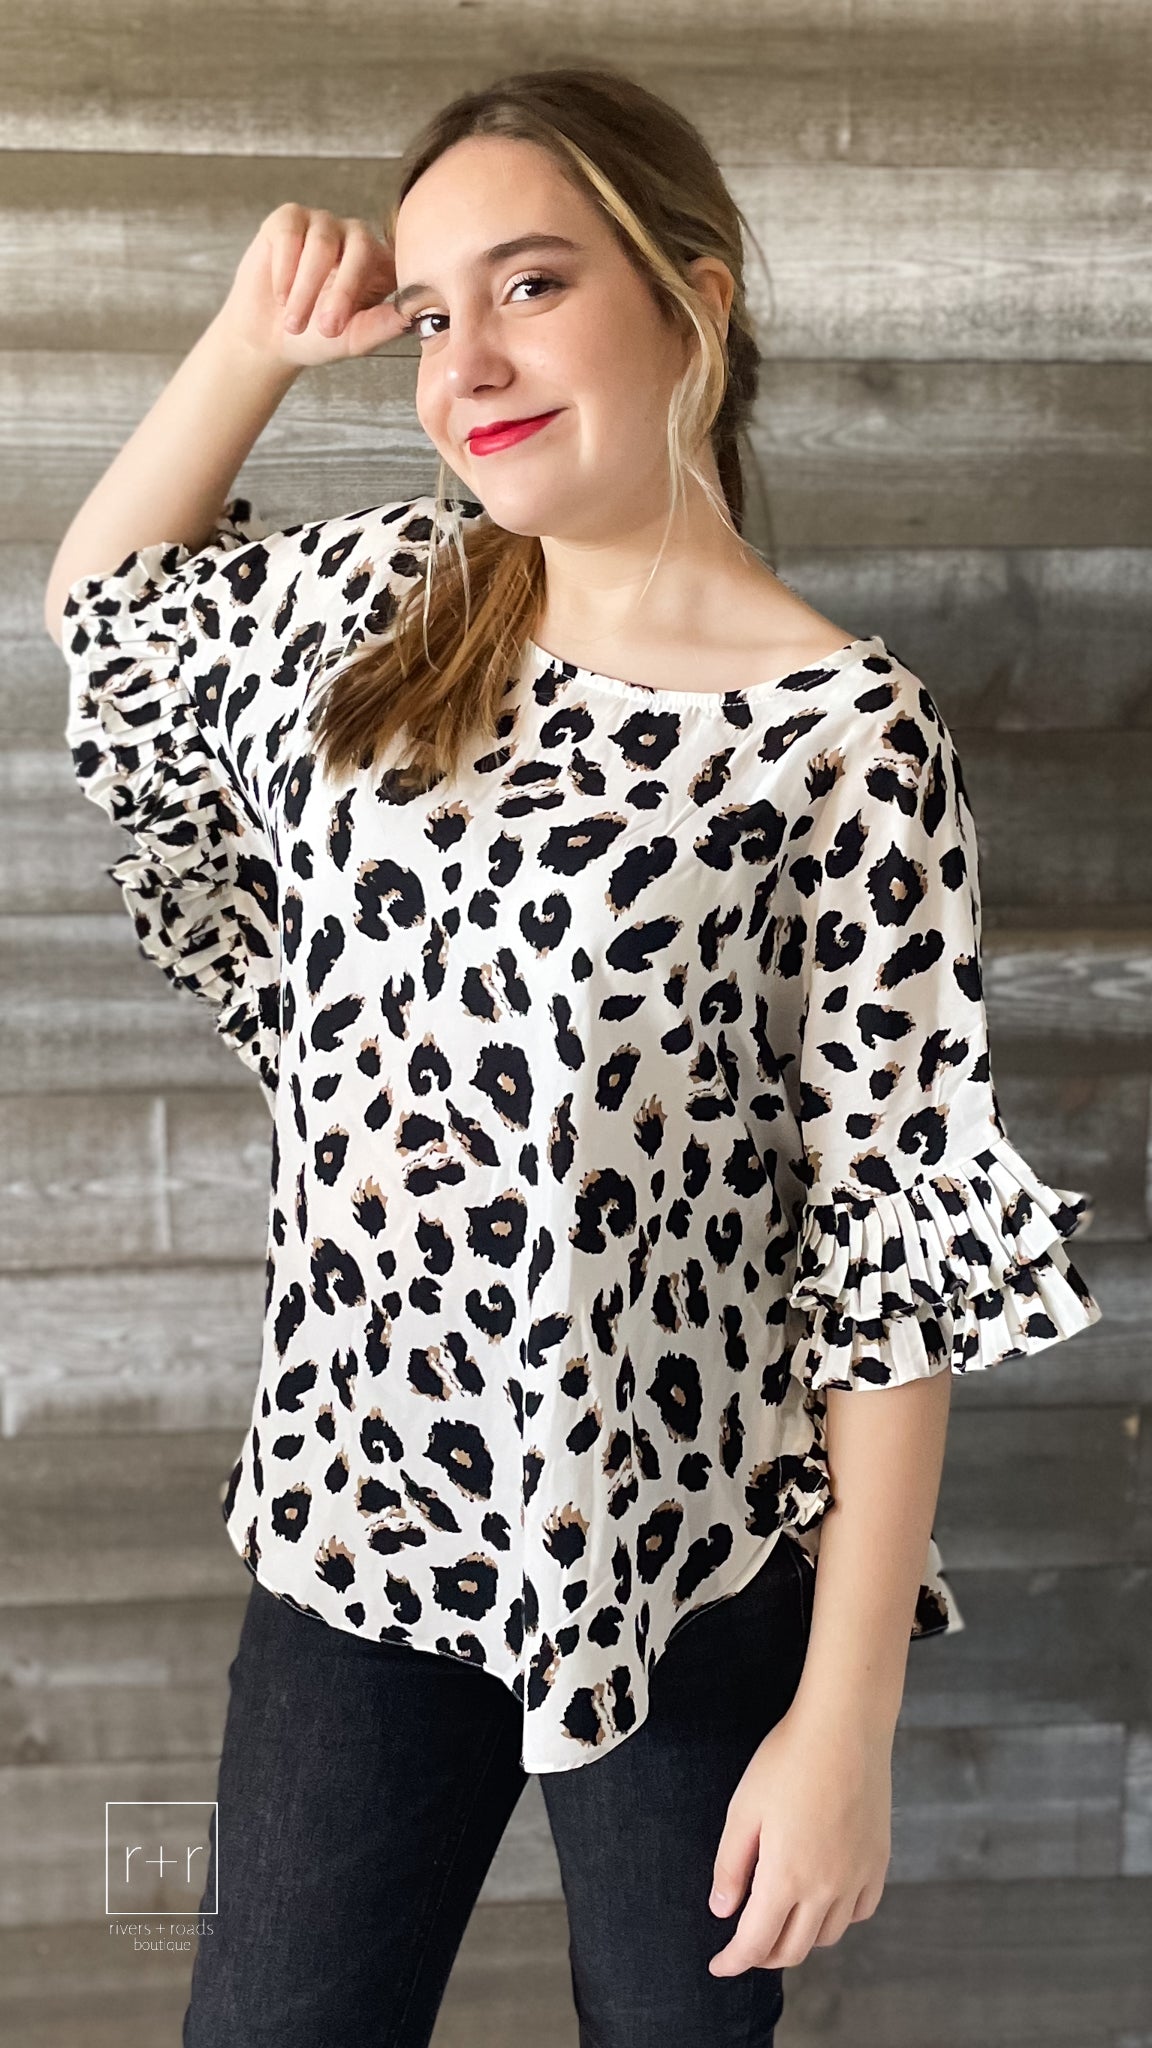 jodifl leopard print dolman ruffle sleeve blouse in off white B7038-1